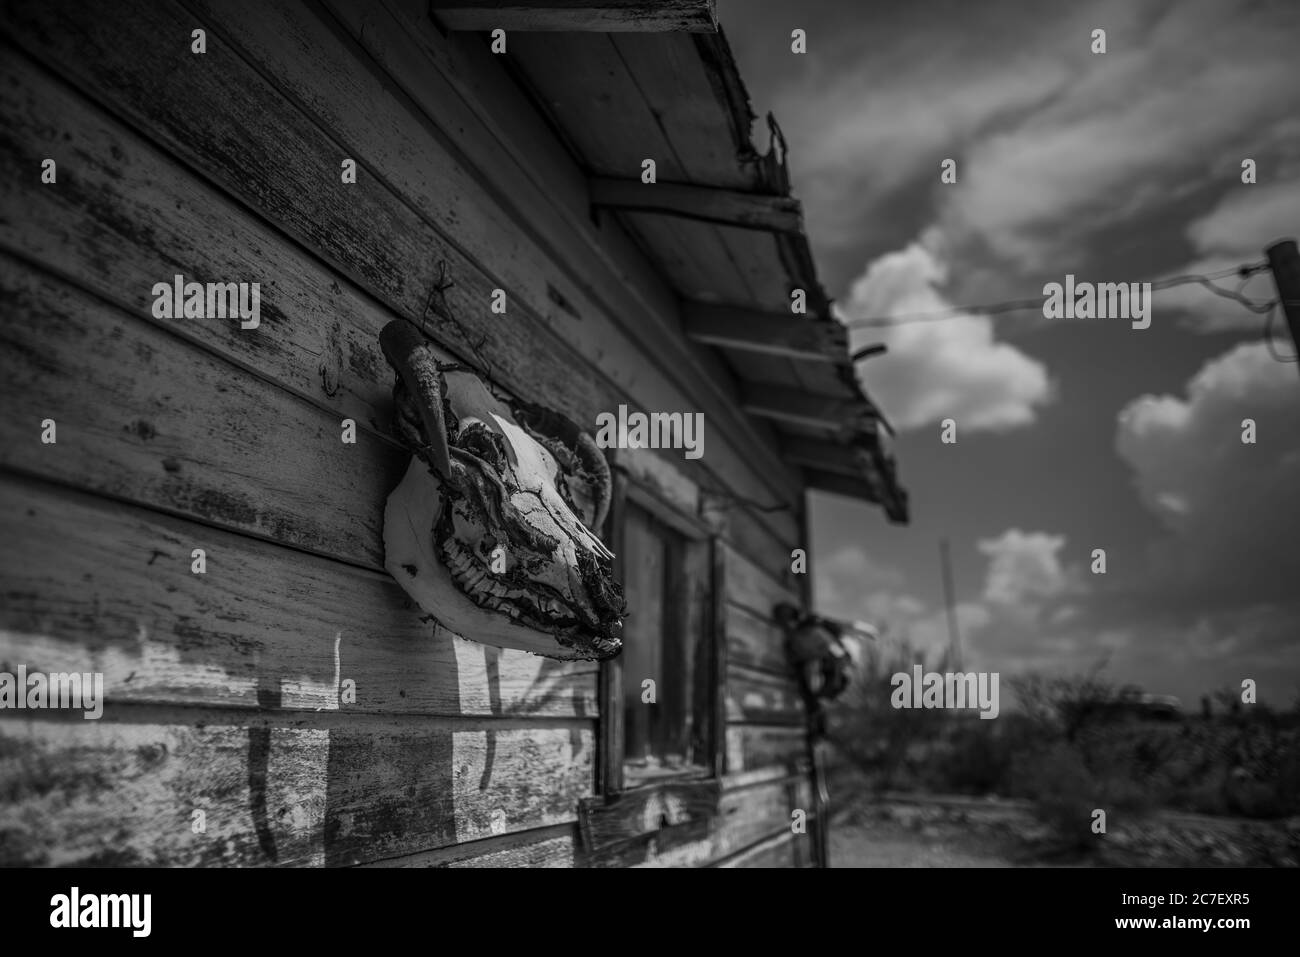 Horizontale Graustufenaufnahme eines Ziegenschädels, der an einem hängt Holzhütte auf der Route 66 Straße Stockfoto